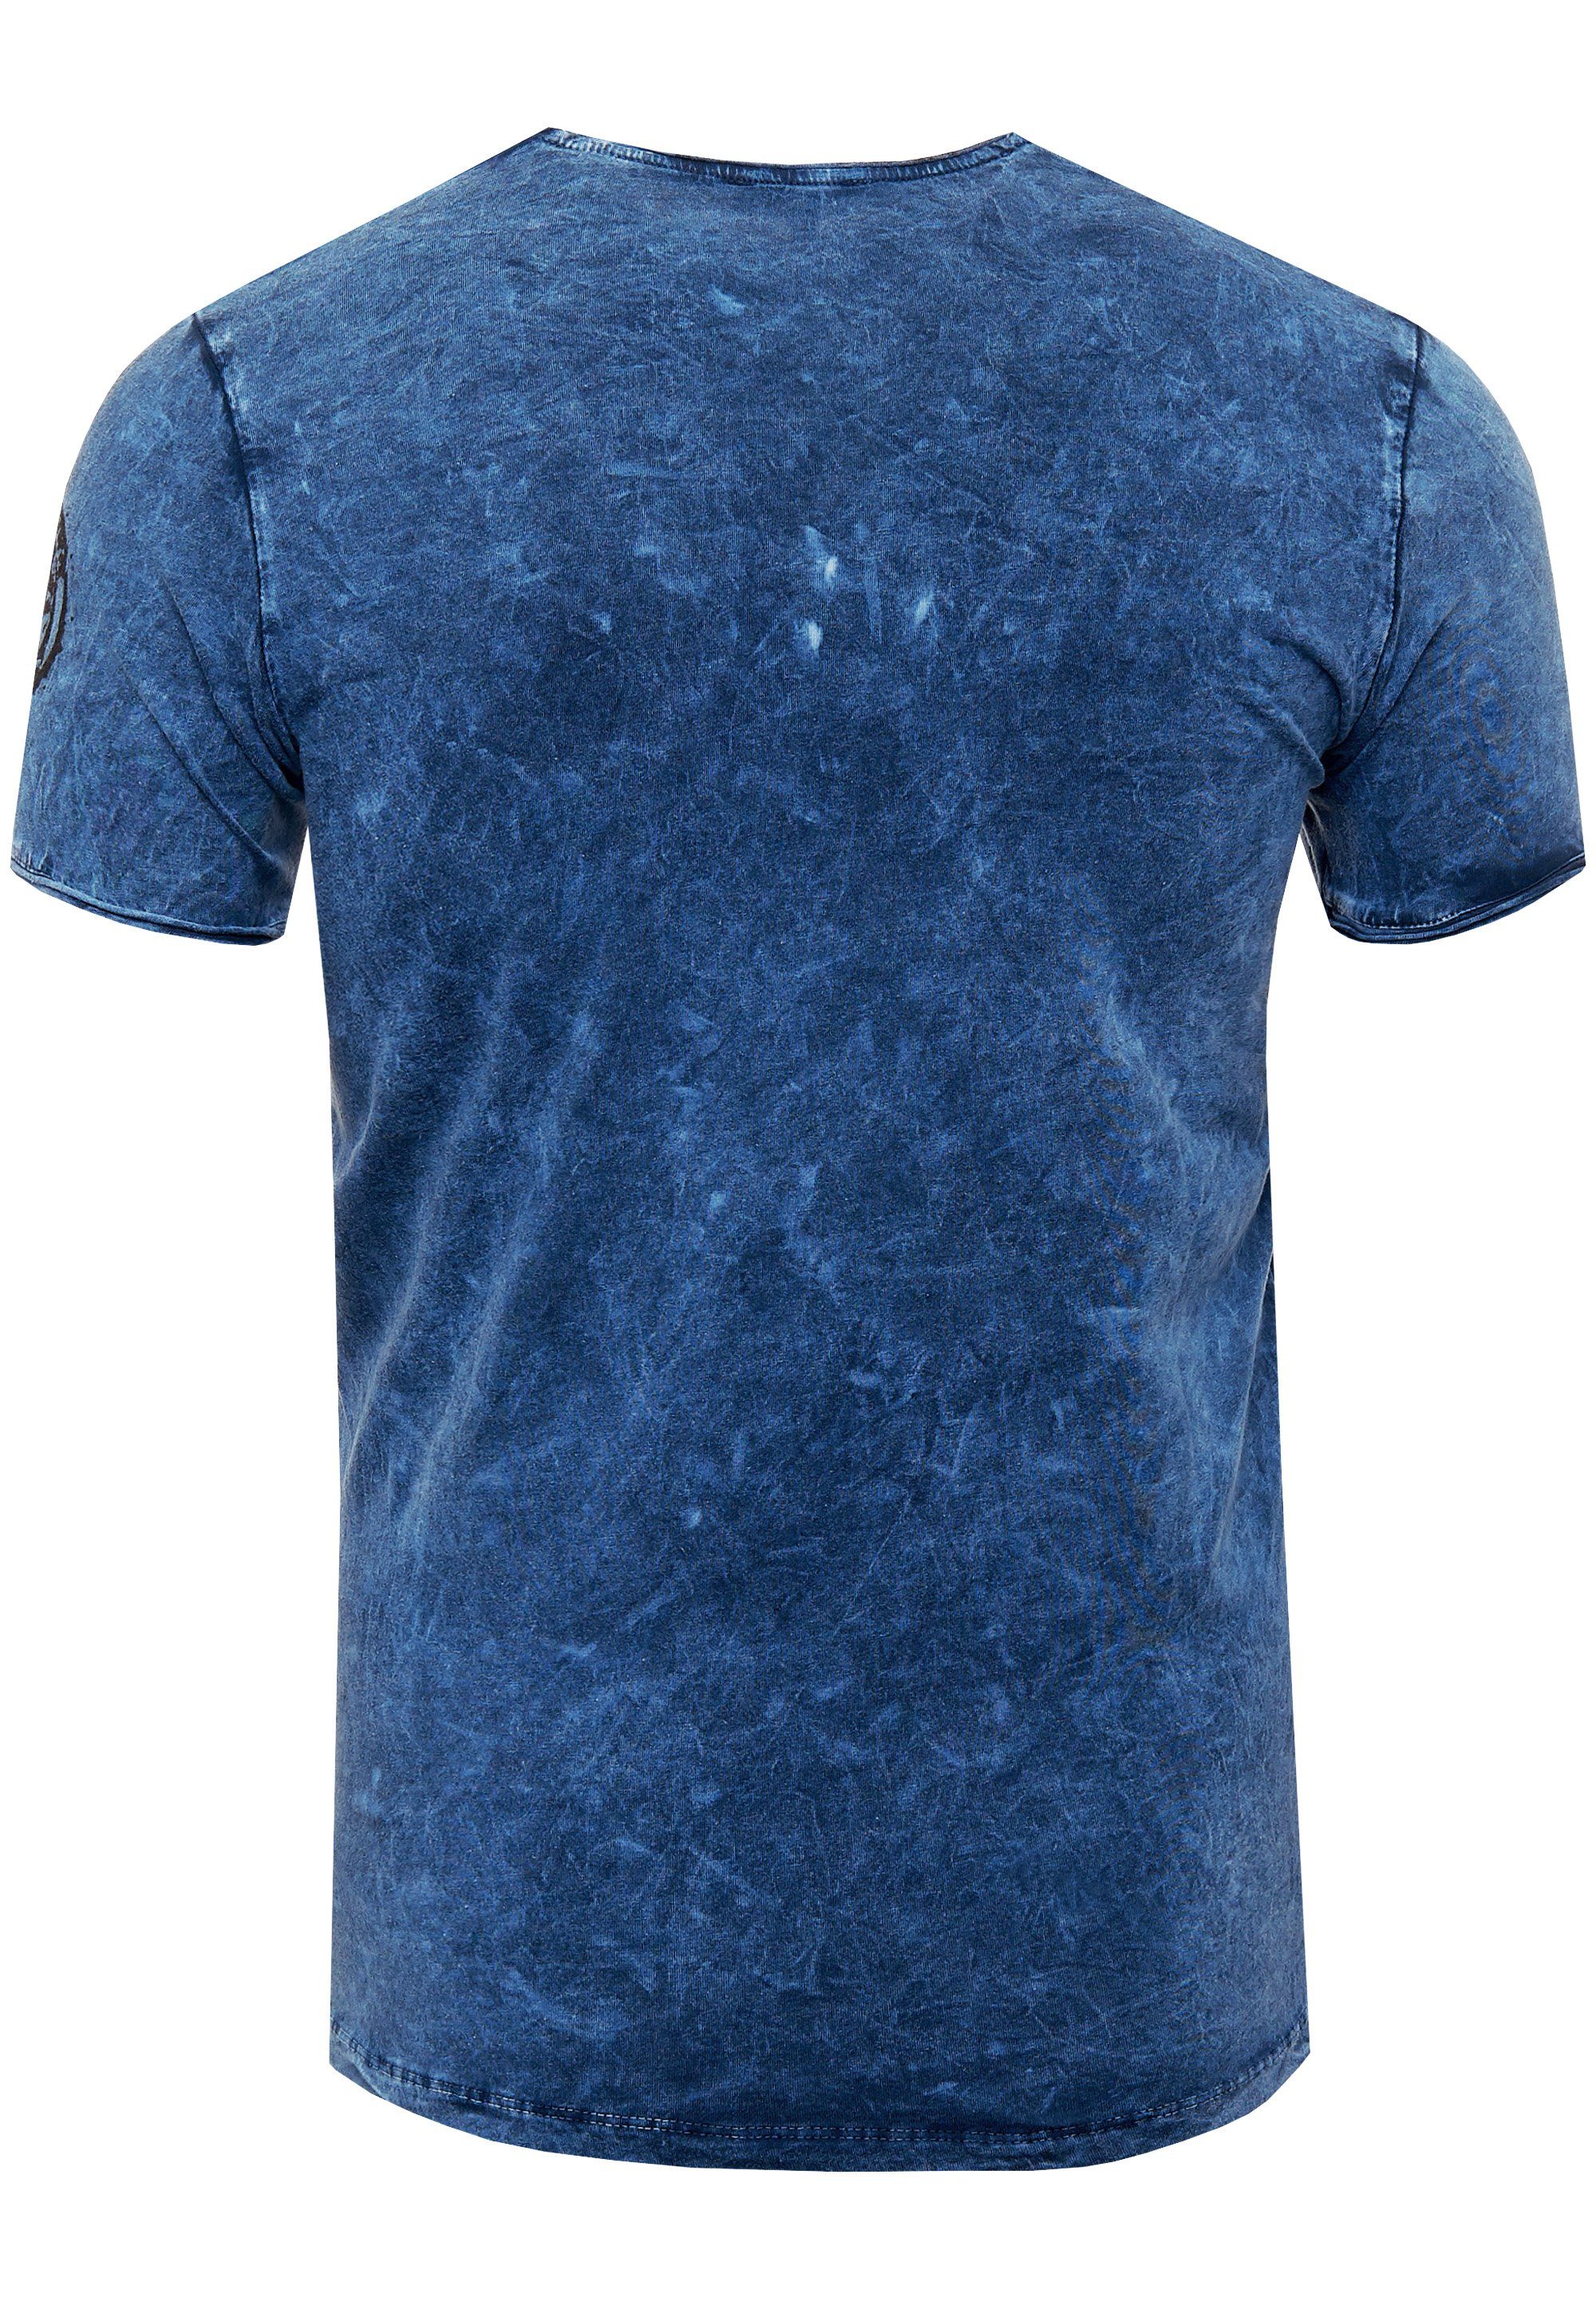 tollem blau Rusty in Neal Vintage-Look T-Shirt